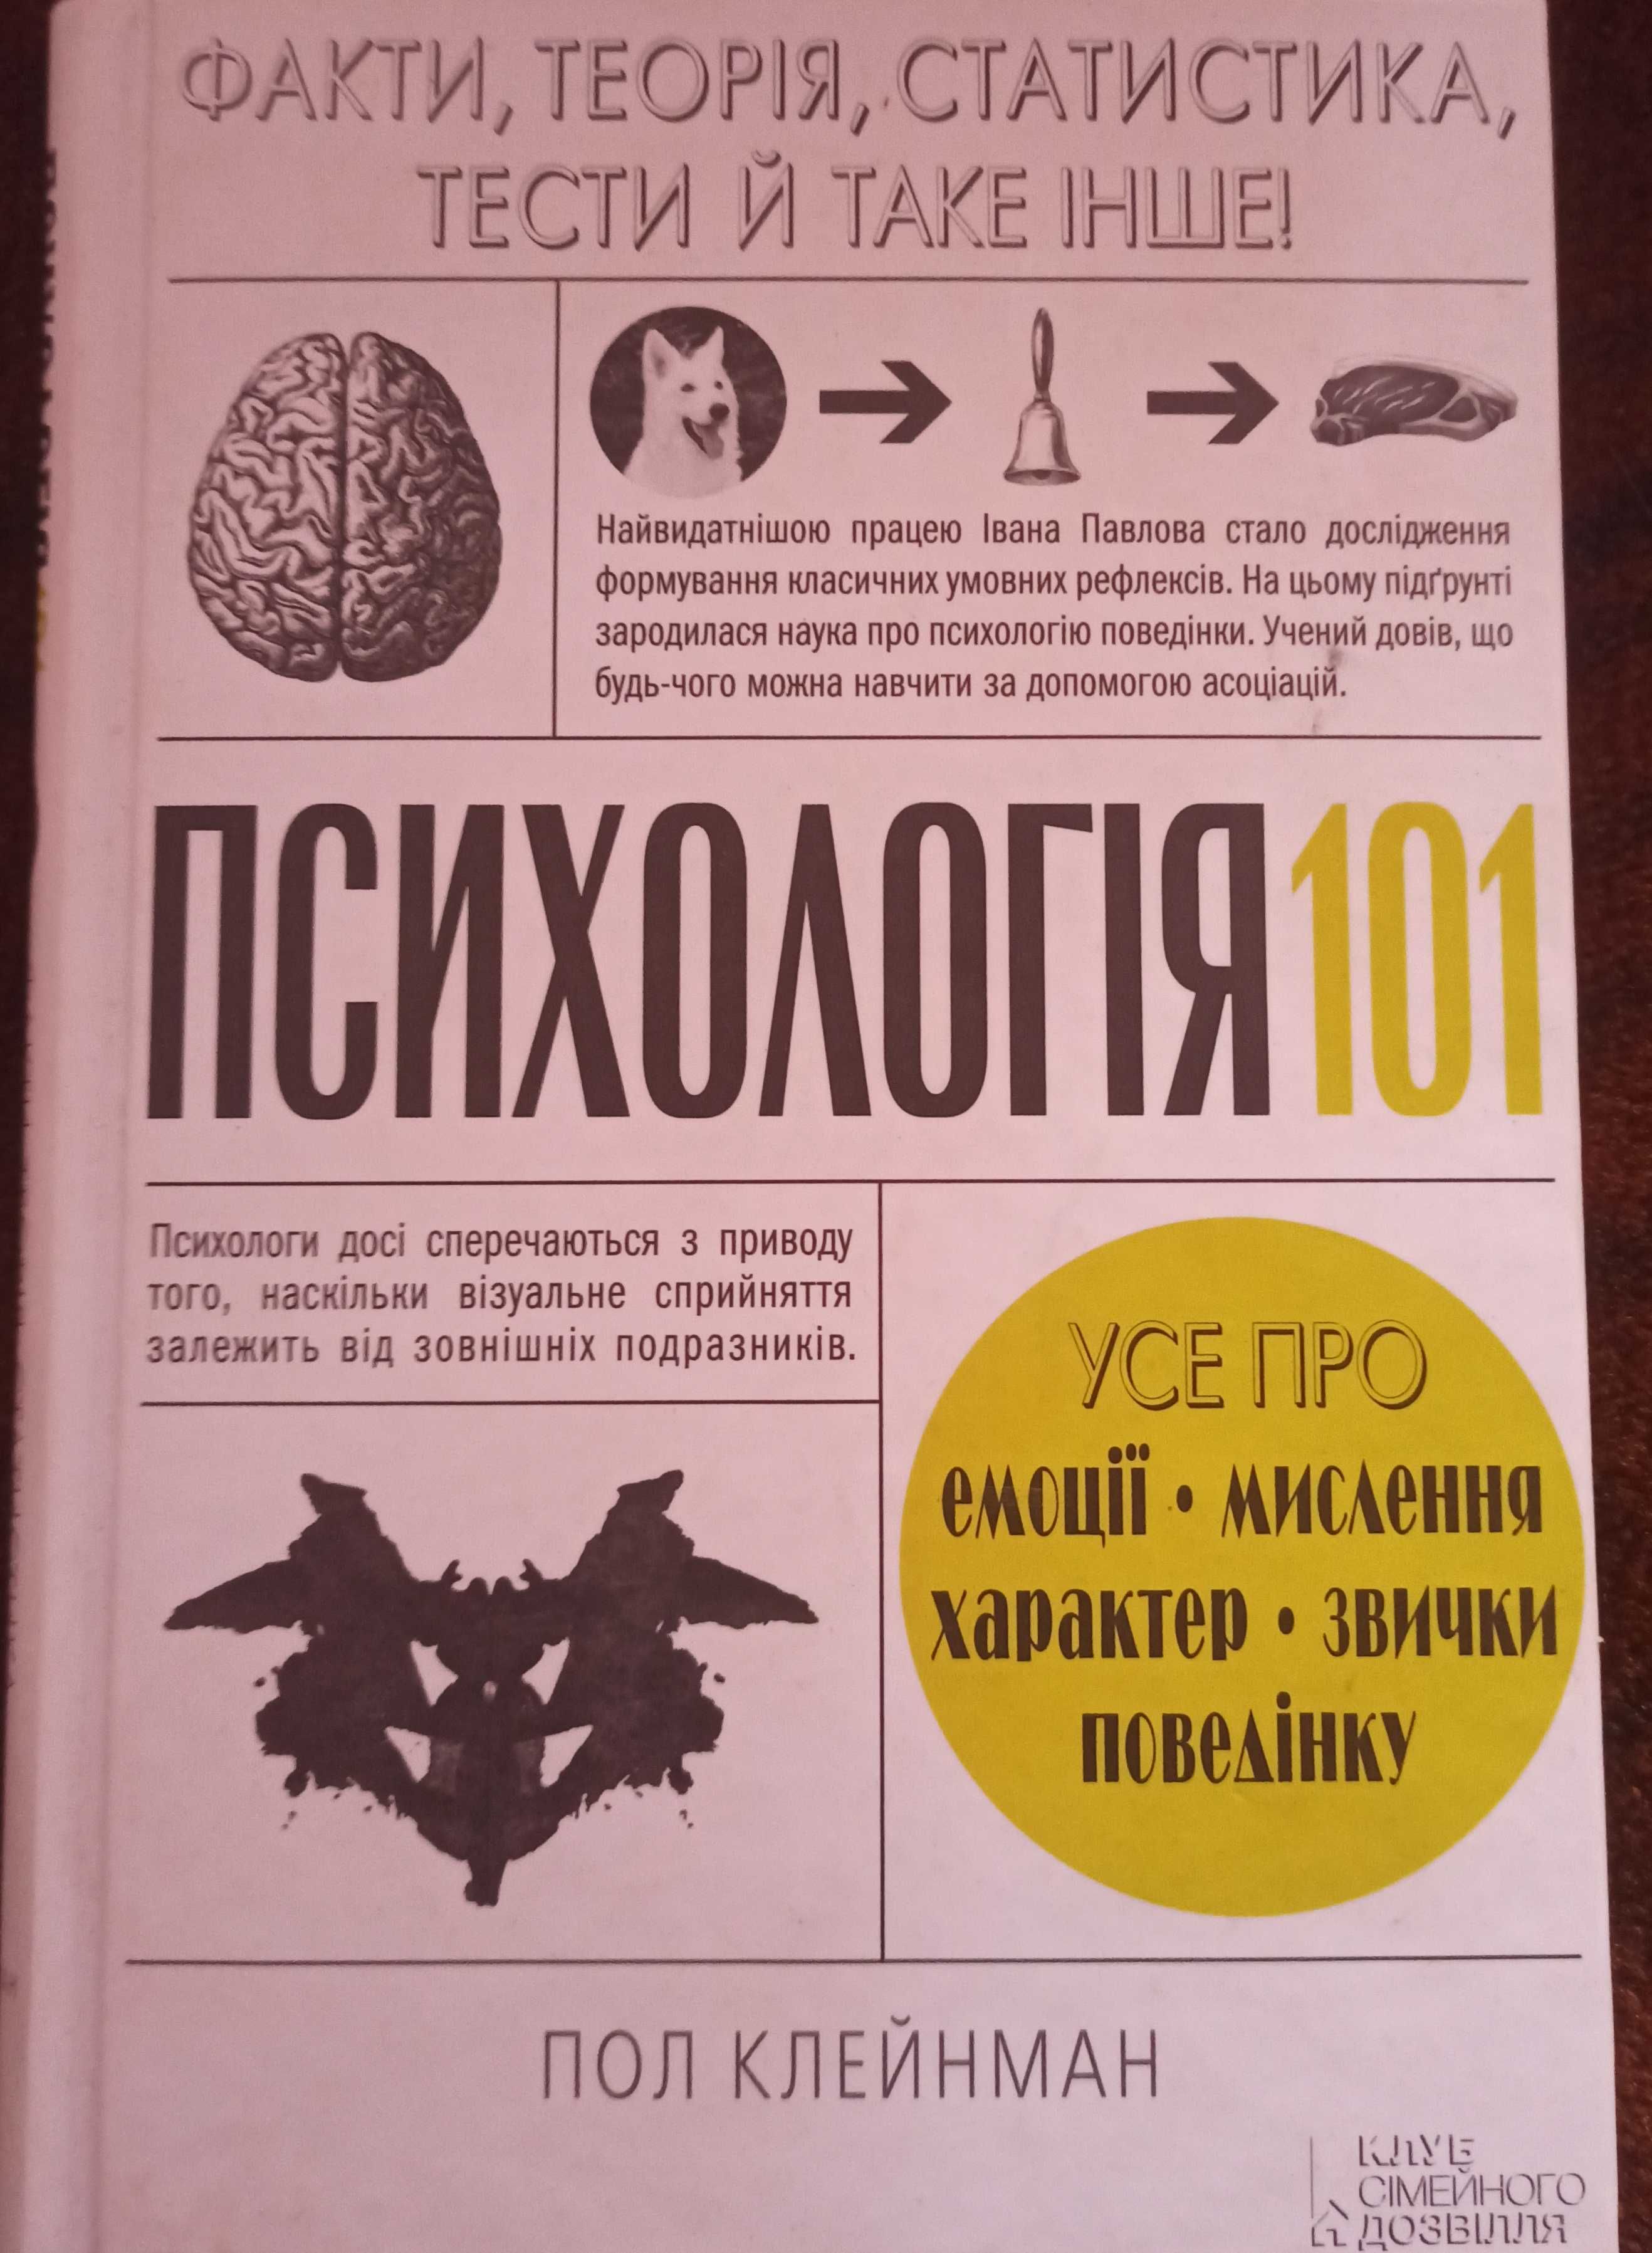 Продам книгу "Психологія 101" Пол Клейнман